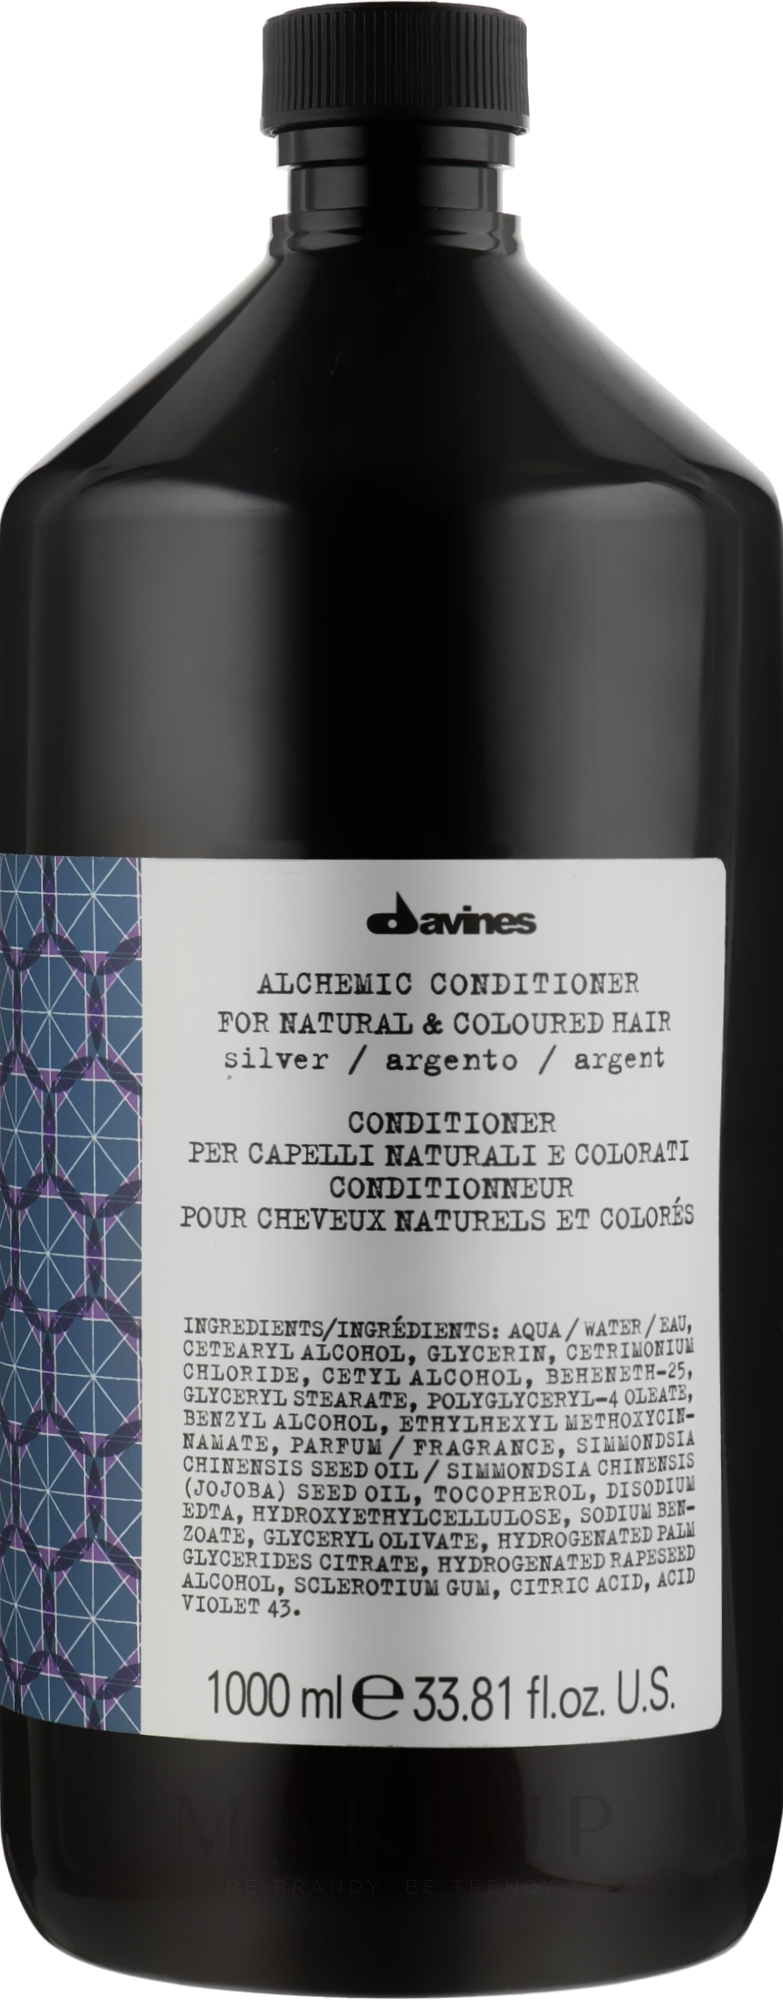 Conditioner für natürliches und gefärbtes Haar (Silver) - Davines Alchemic Conditioner — Bild 1000 ml